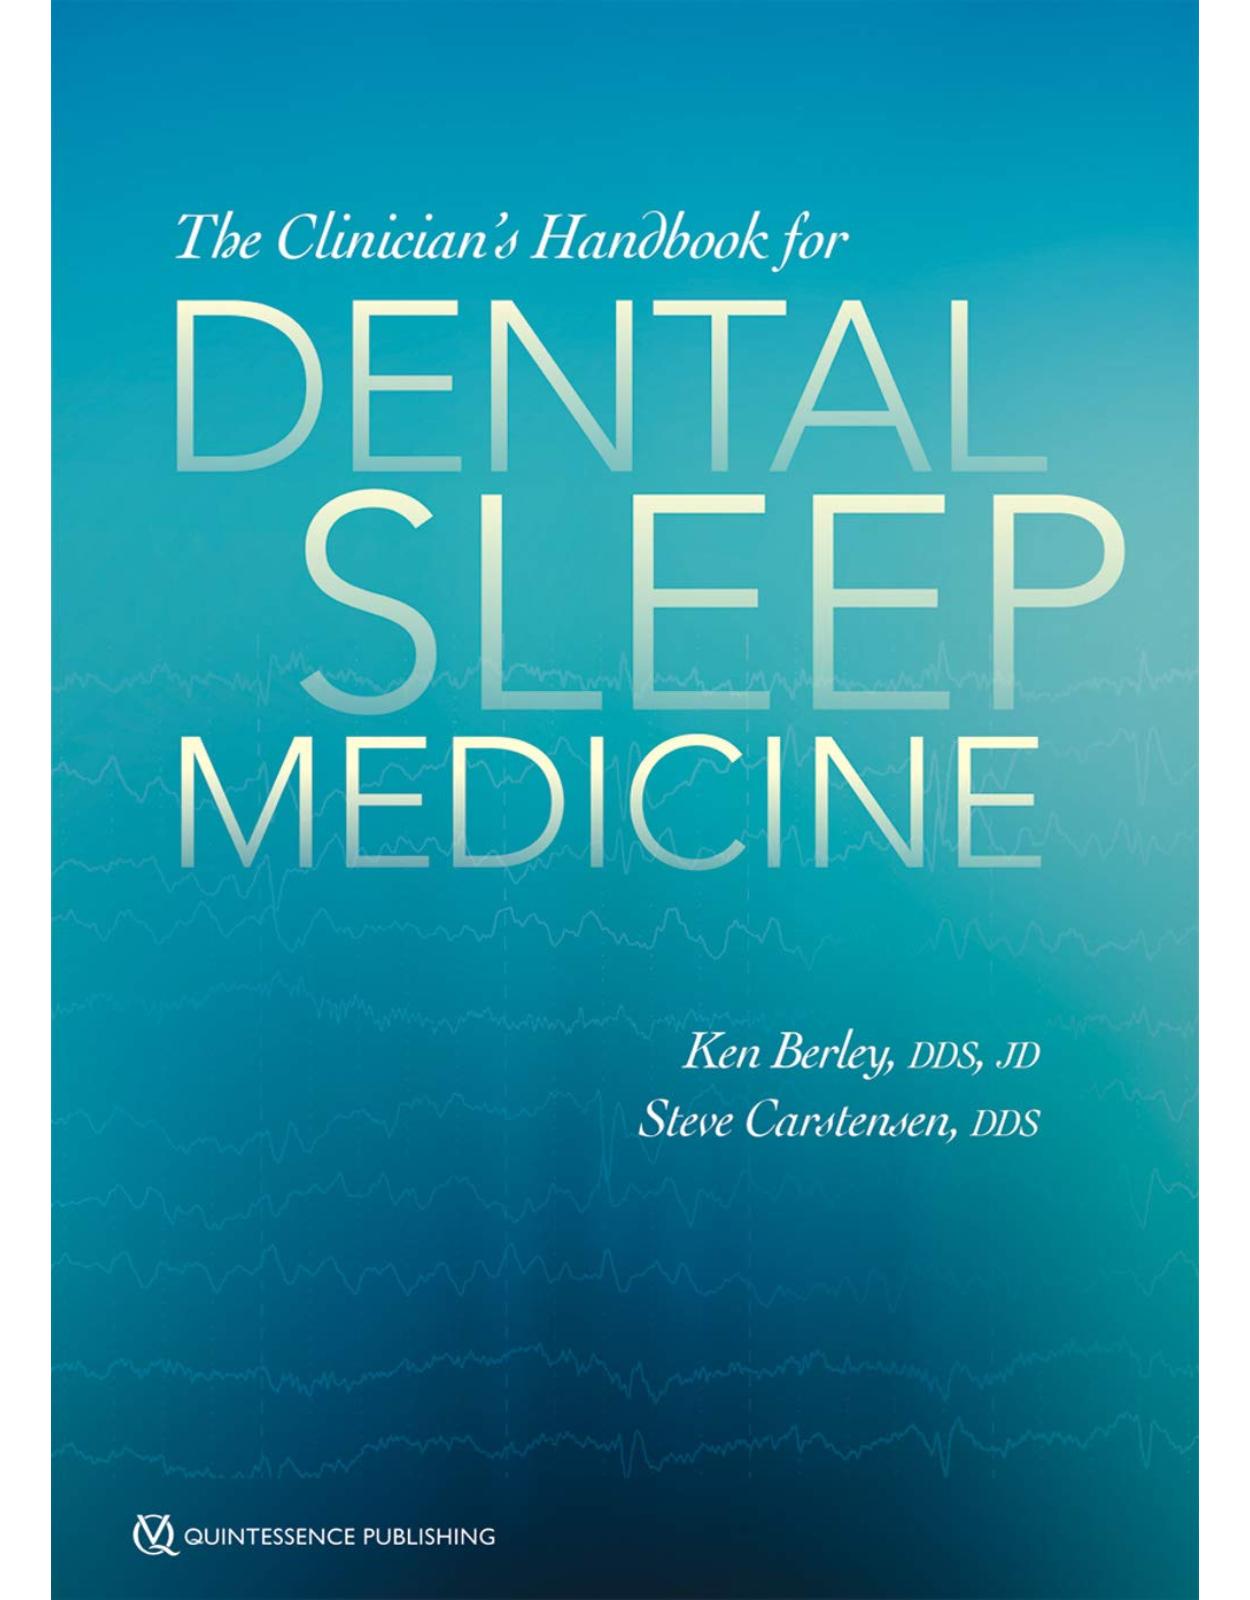 The Clinician's Handbook for Dental Sleep Medicine